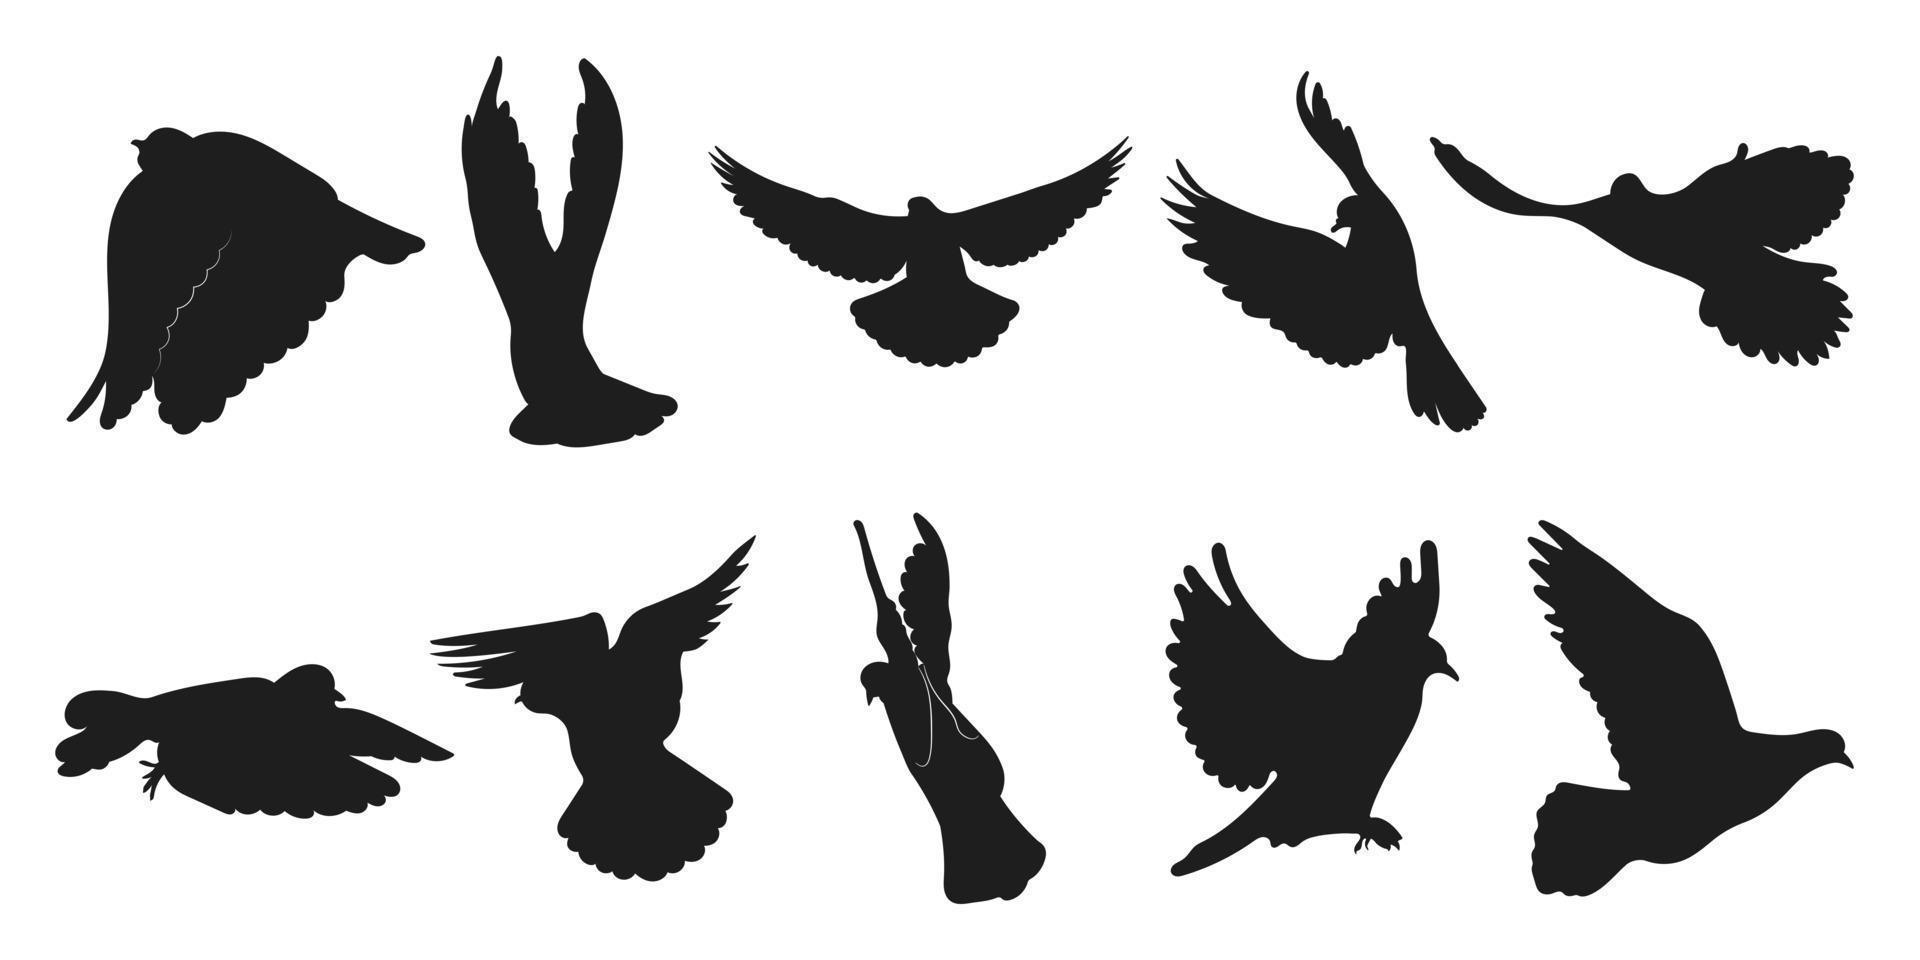 Vektorset Taube, Taubenflug, verschiedene Packung Vogelsilhouetten Handzeichnung, isolierter Vektor